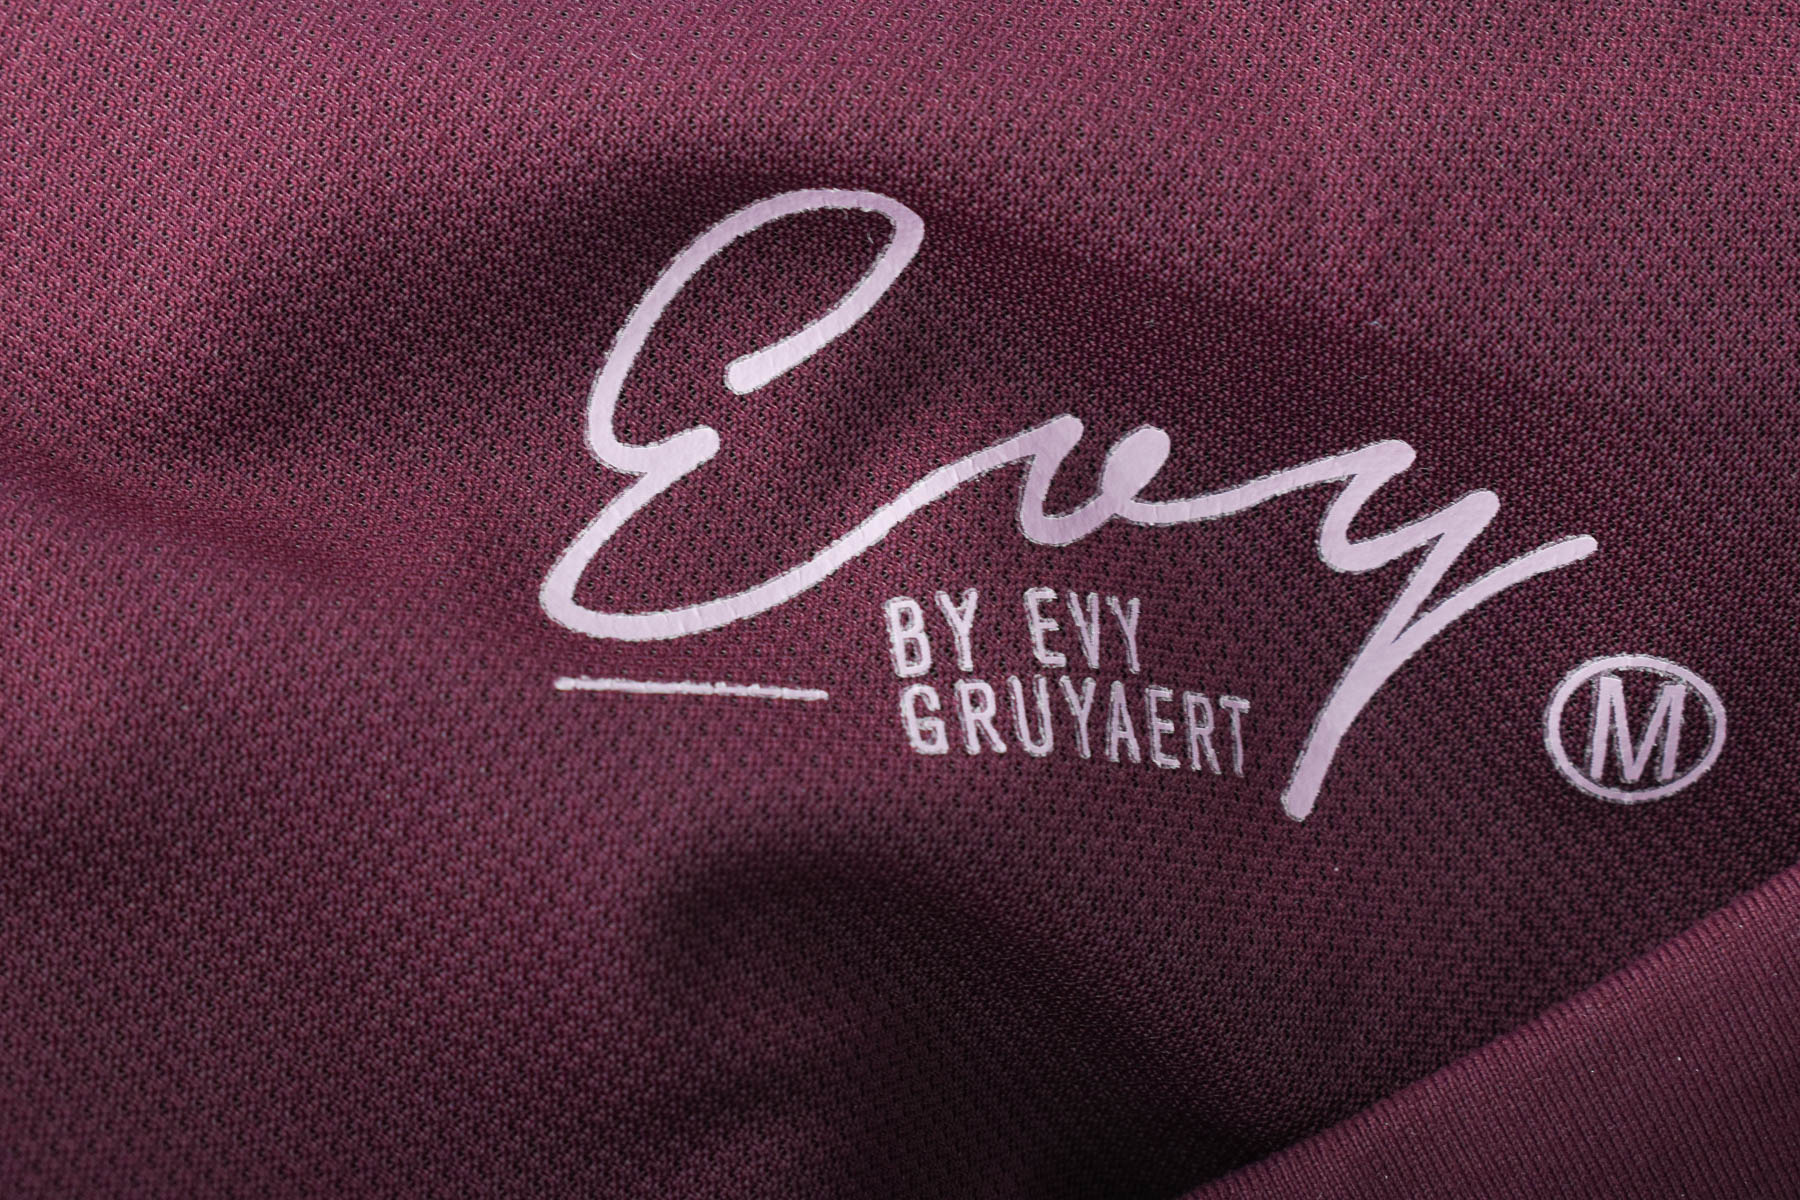 Leggings - Evy by Evy Gruyaert - 2